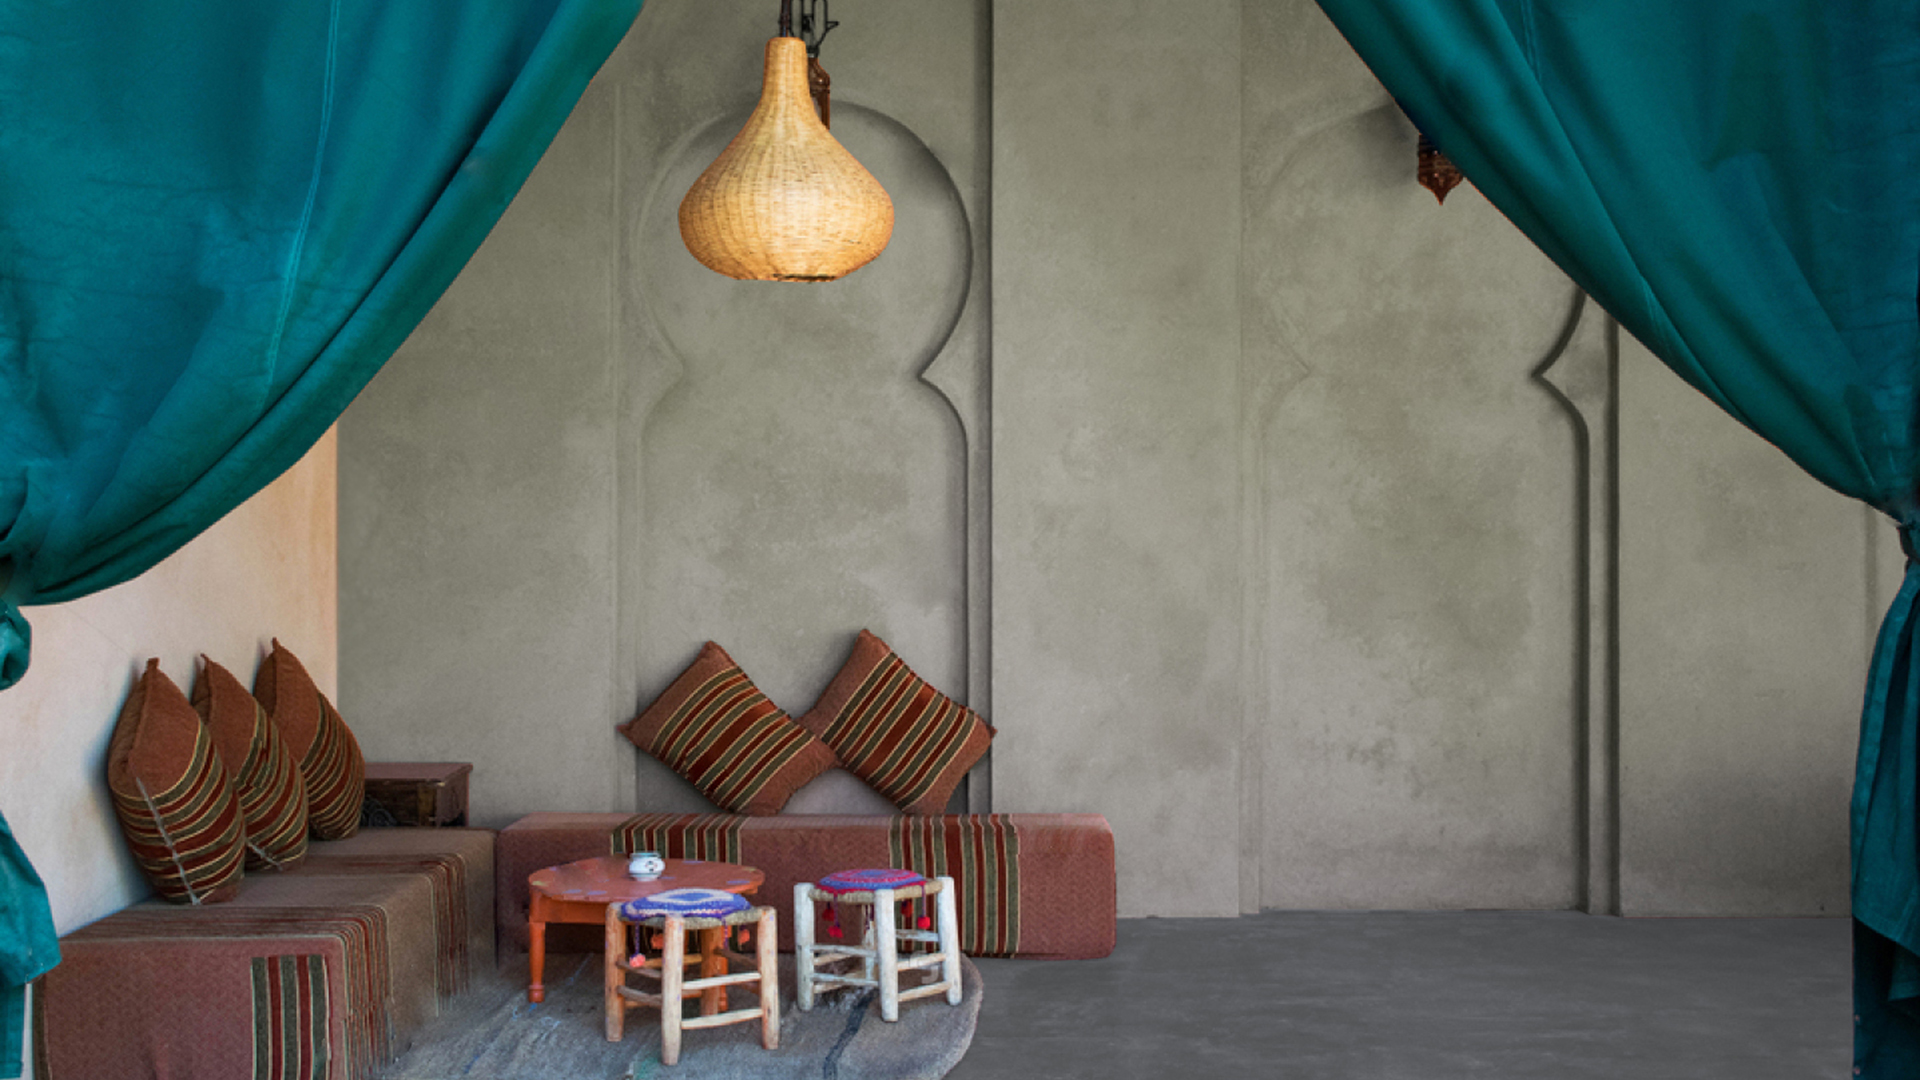 Maroški salon s tadelaktom na tleh in stenah